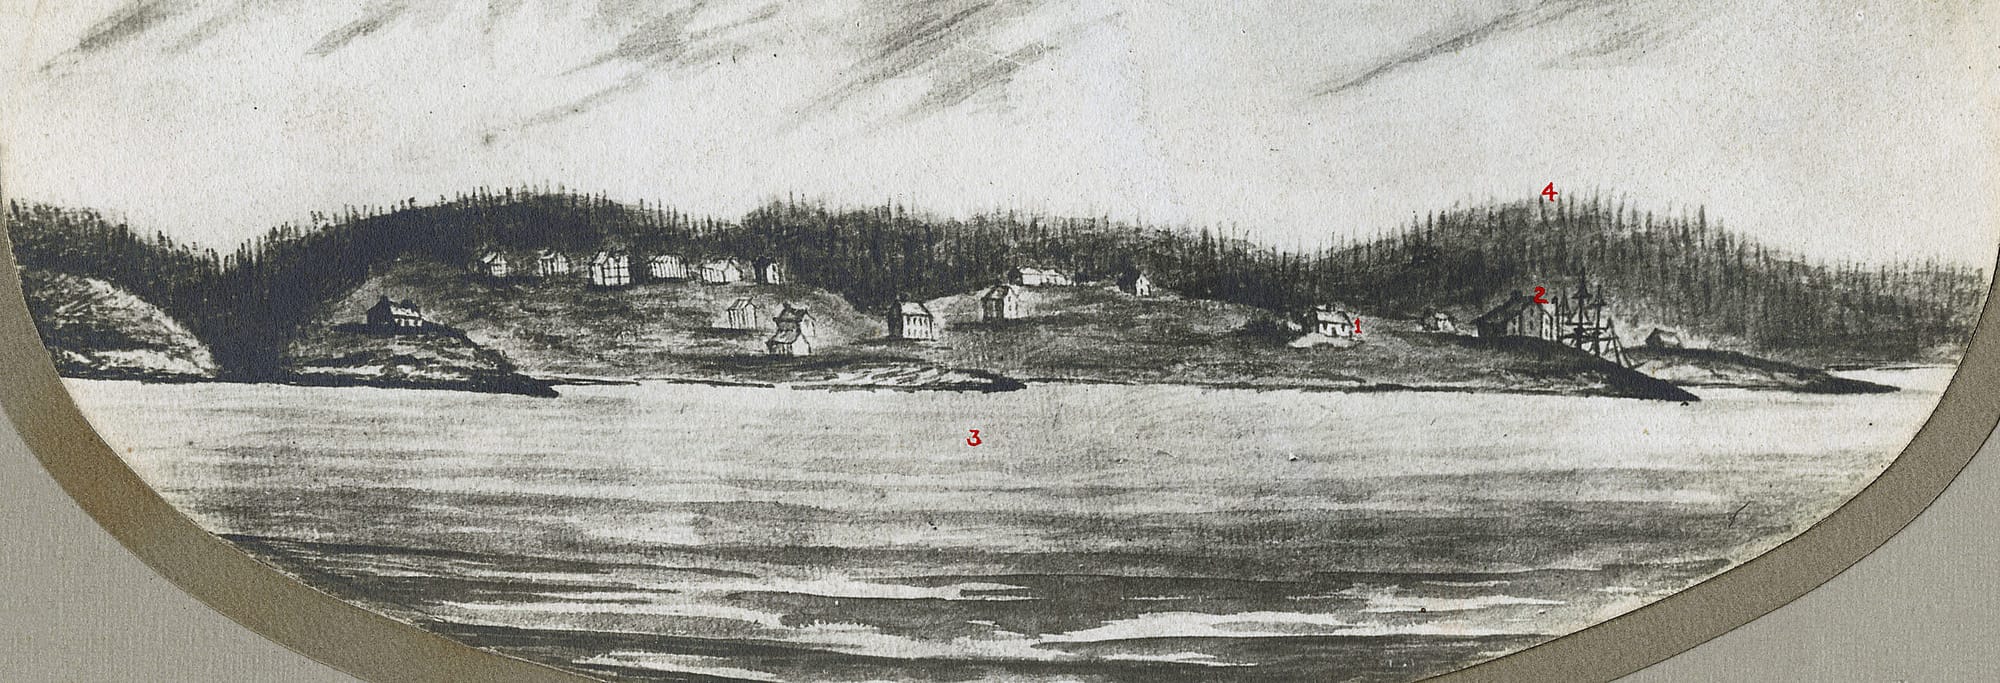 Dartmouth Shore, 1786